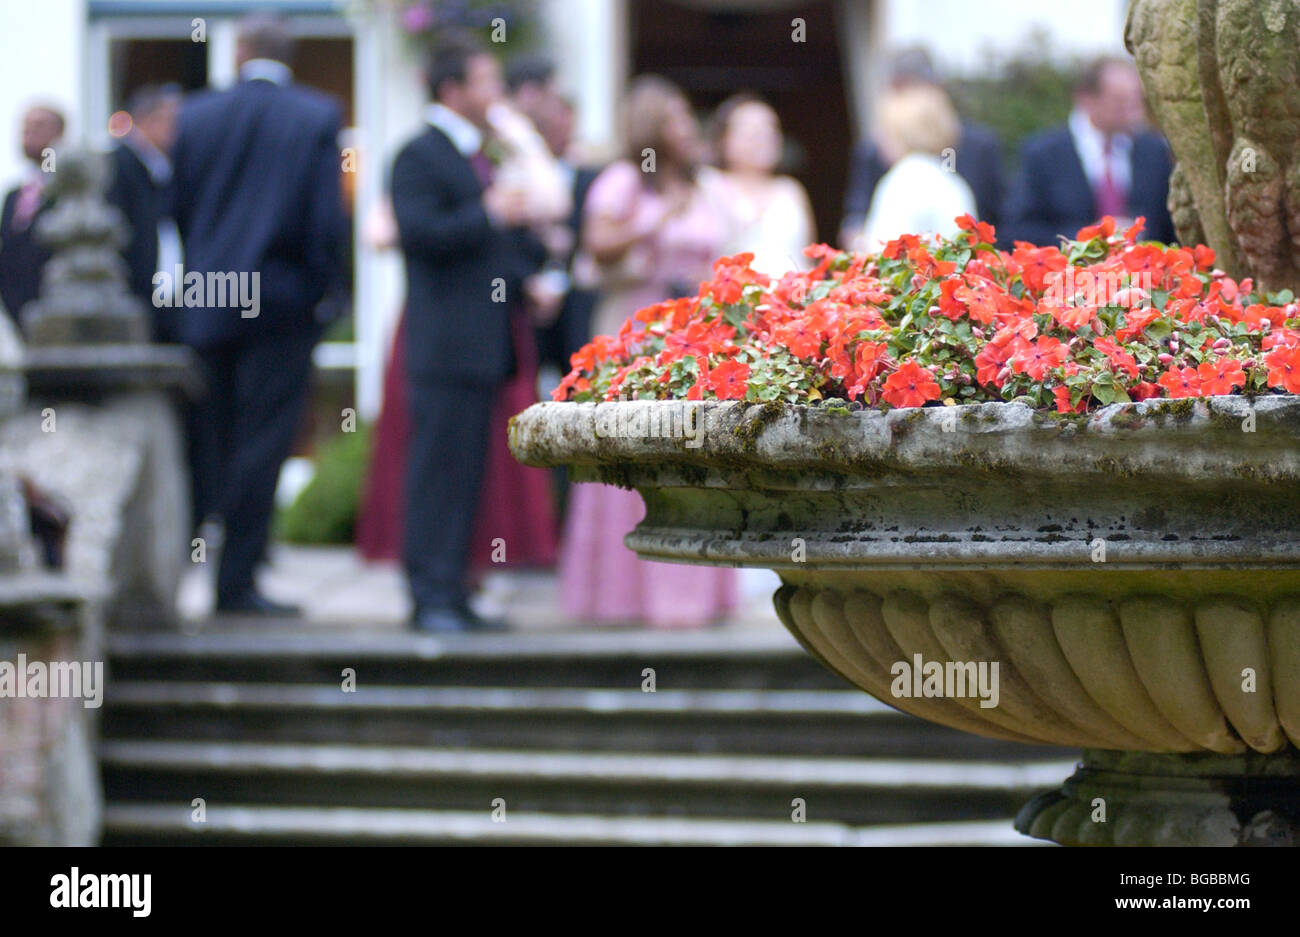 Image libre photo de pot de fleur traditionnelle dans un jardin avec une réception de mariage dans l'arrière-plan Banque D'Images